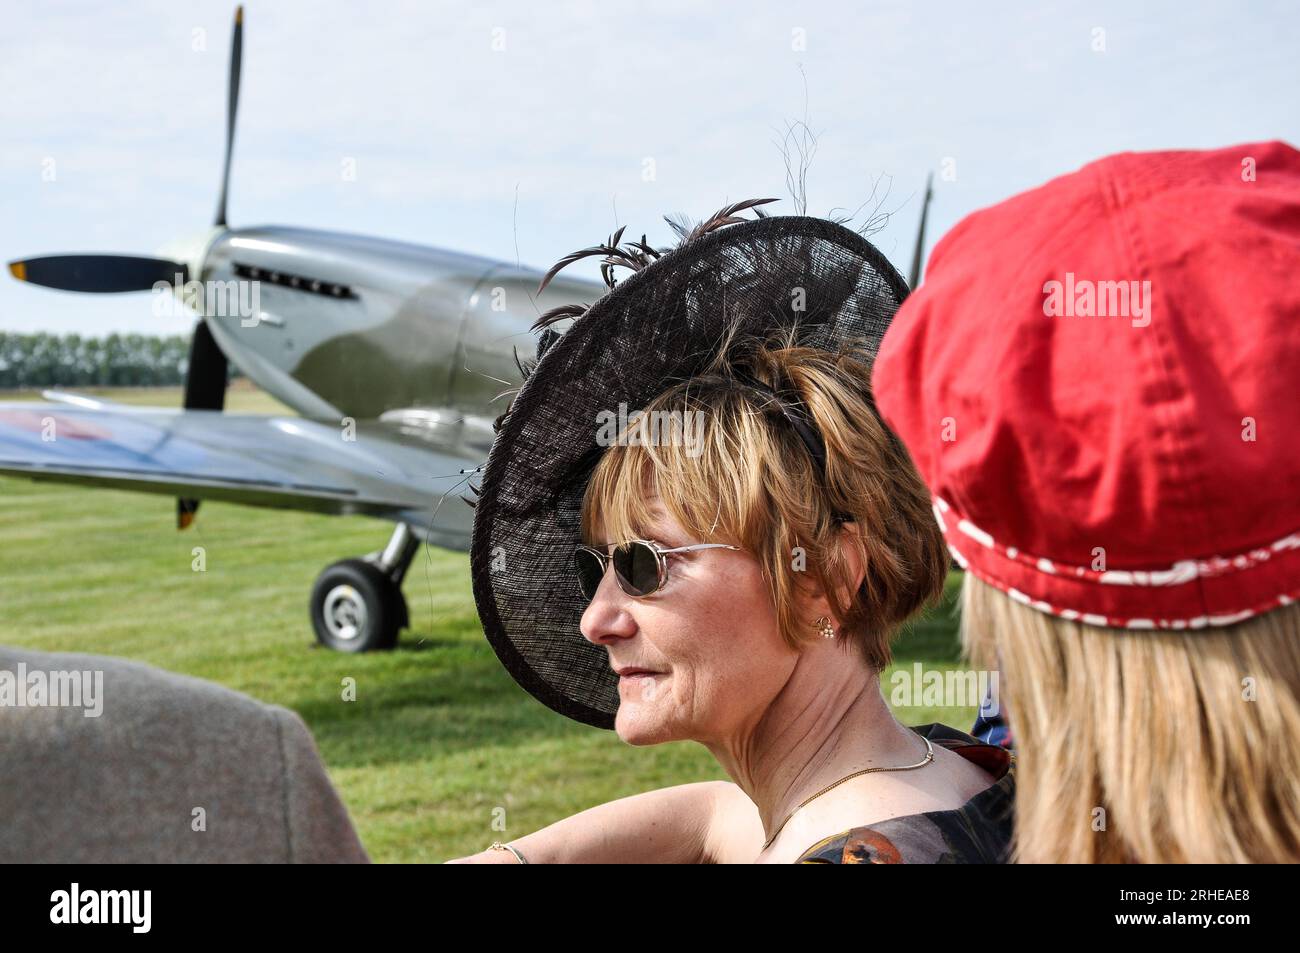 Donna in abbigliamento d'epoca che guarda l'esibizione aerea all'evento vintage Goodwood Revival, West Sussex, Regno Unito. Aereo Spitfire. Bel cappello nero, fascinatore Foto Stock